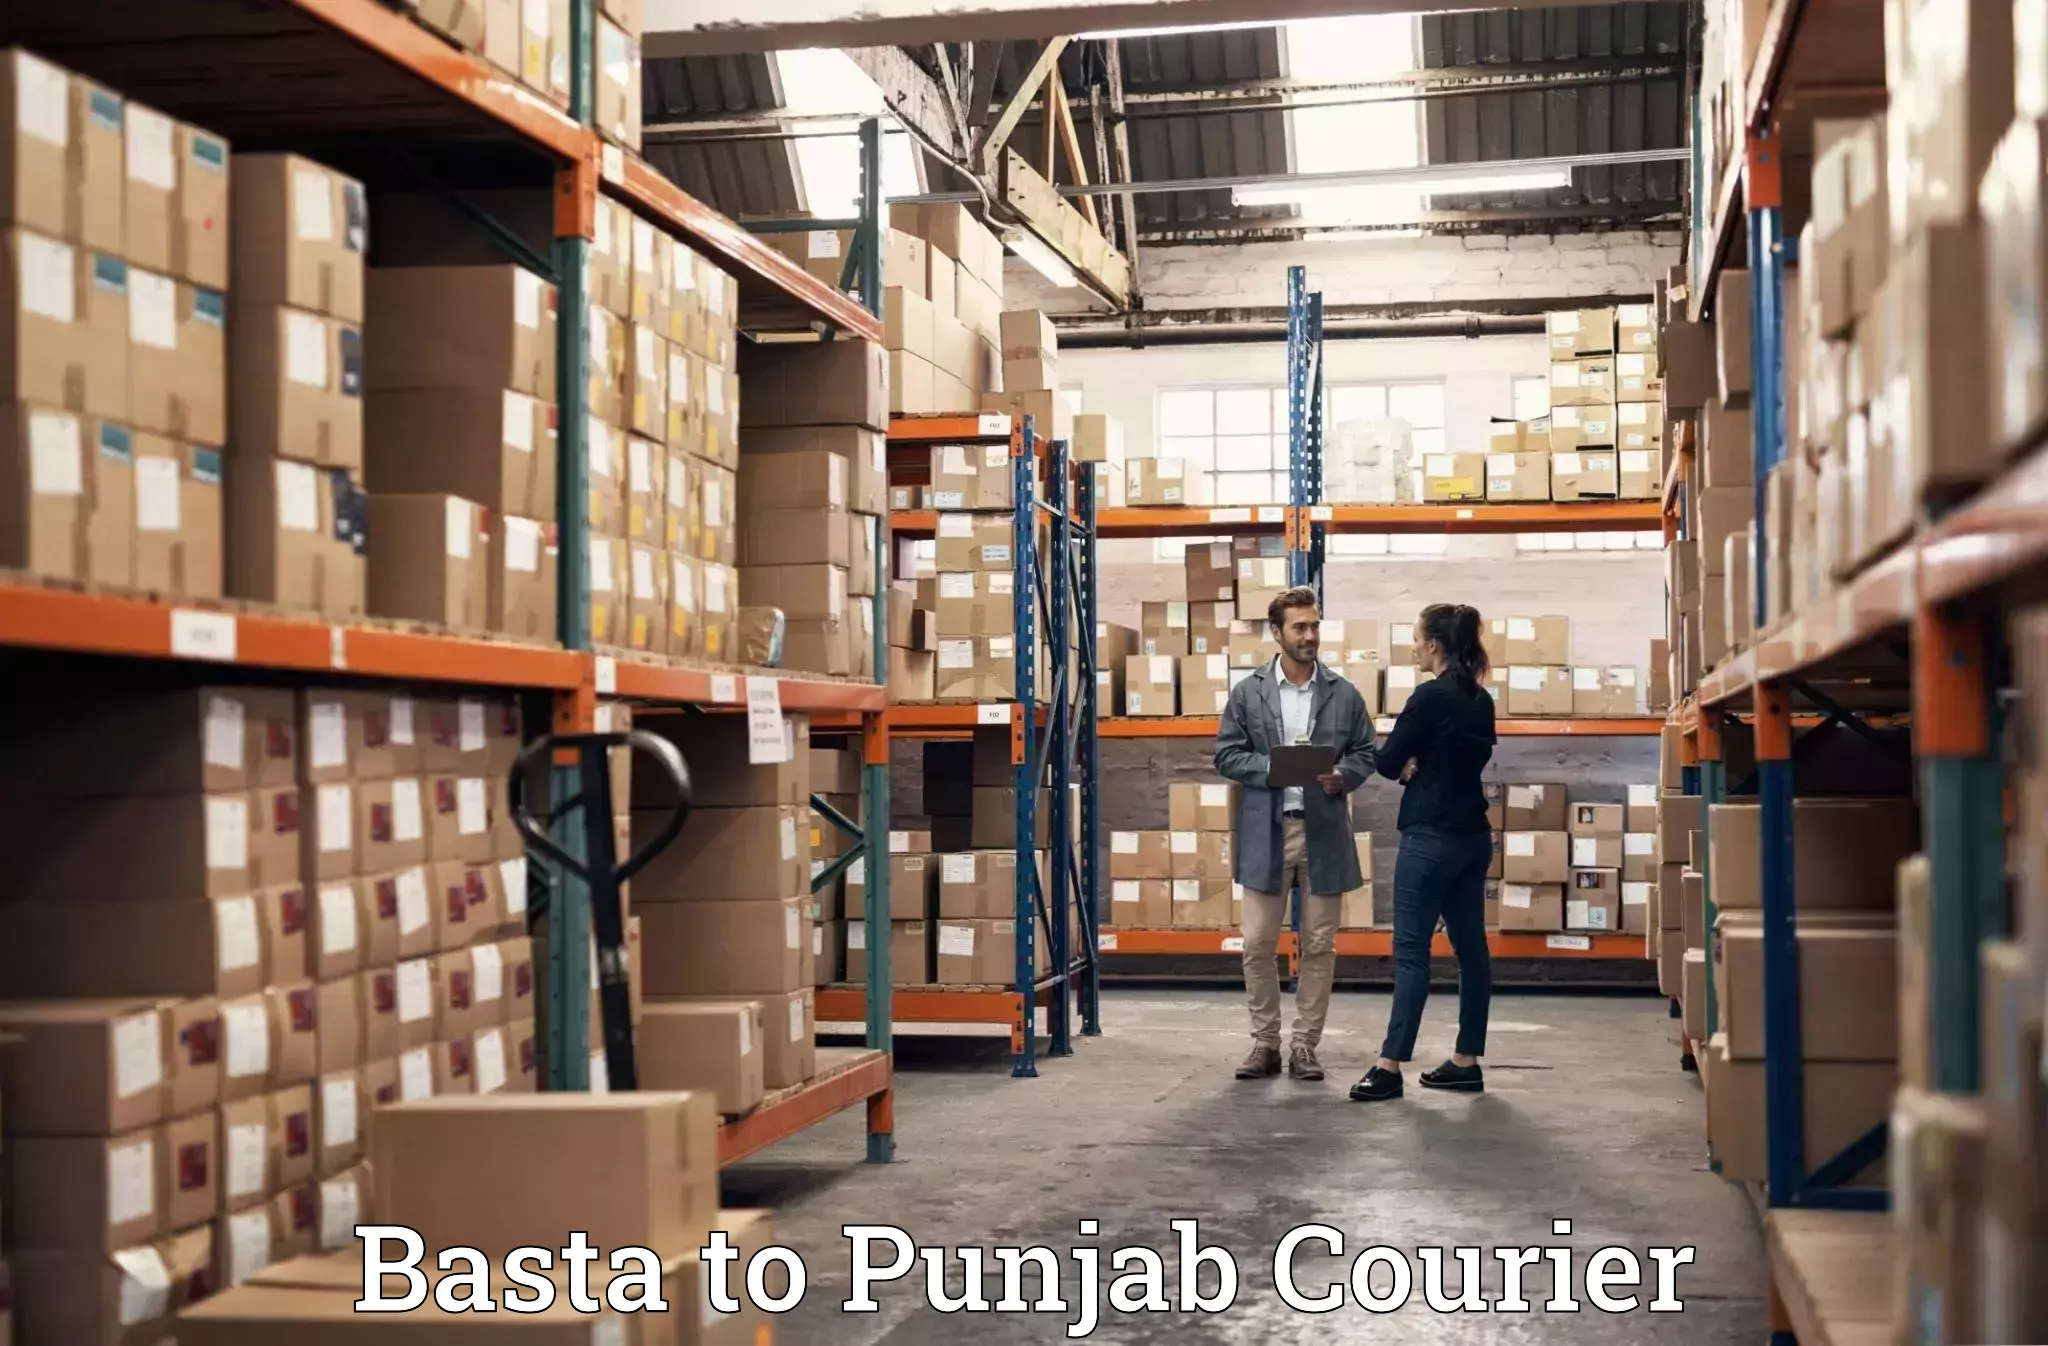 Efficient moving company Basta to Samana